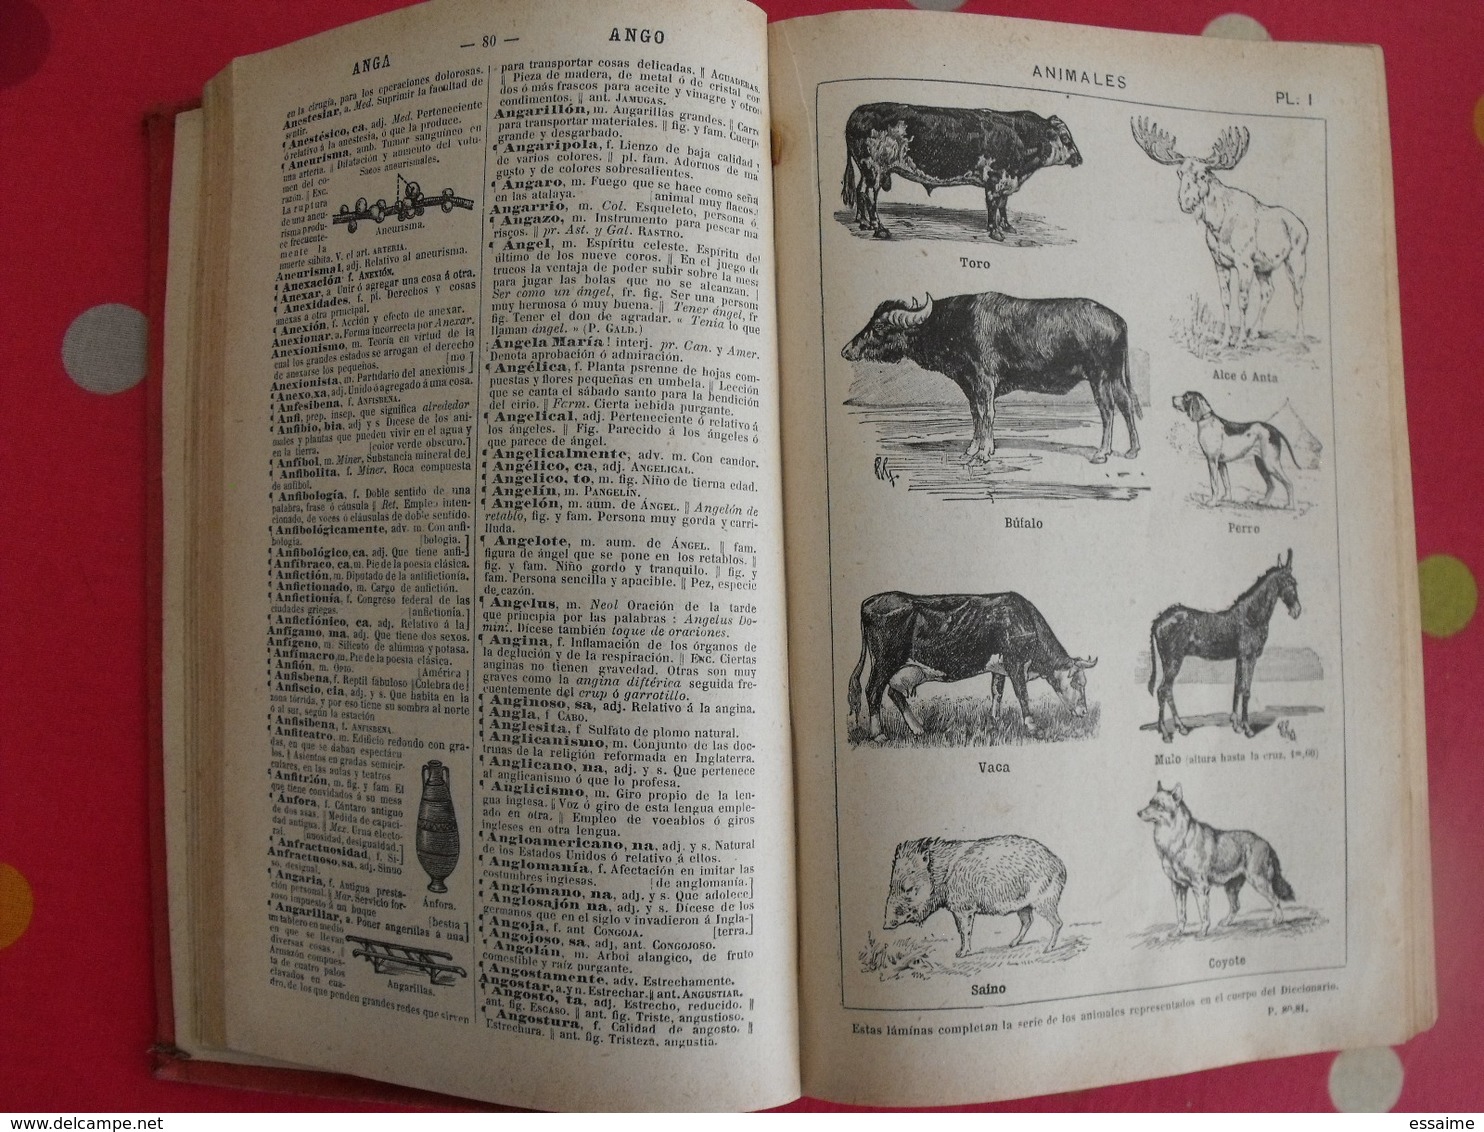 nuevo diccionario de la  lengua castellana. miguel de toro y gomez. armand colin 1926. castillan espagnol-français